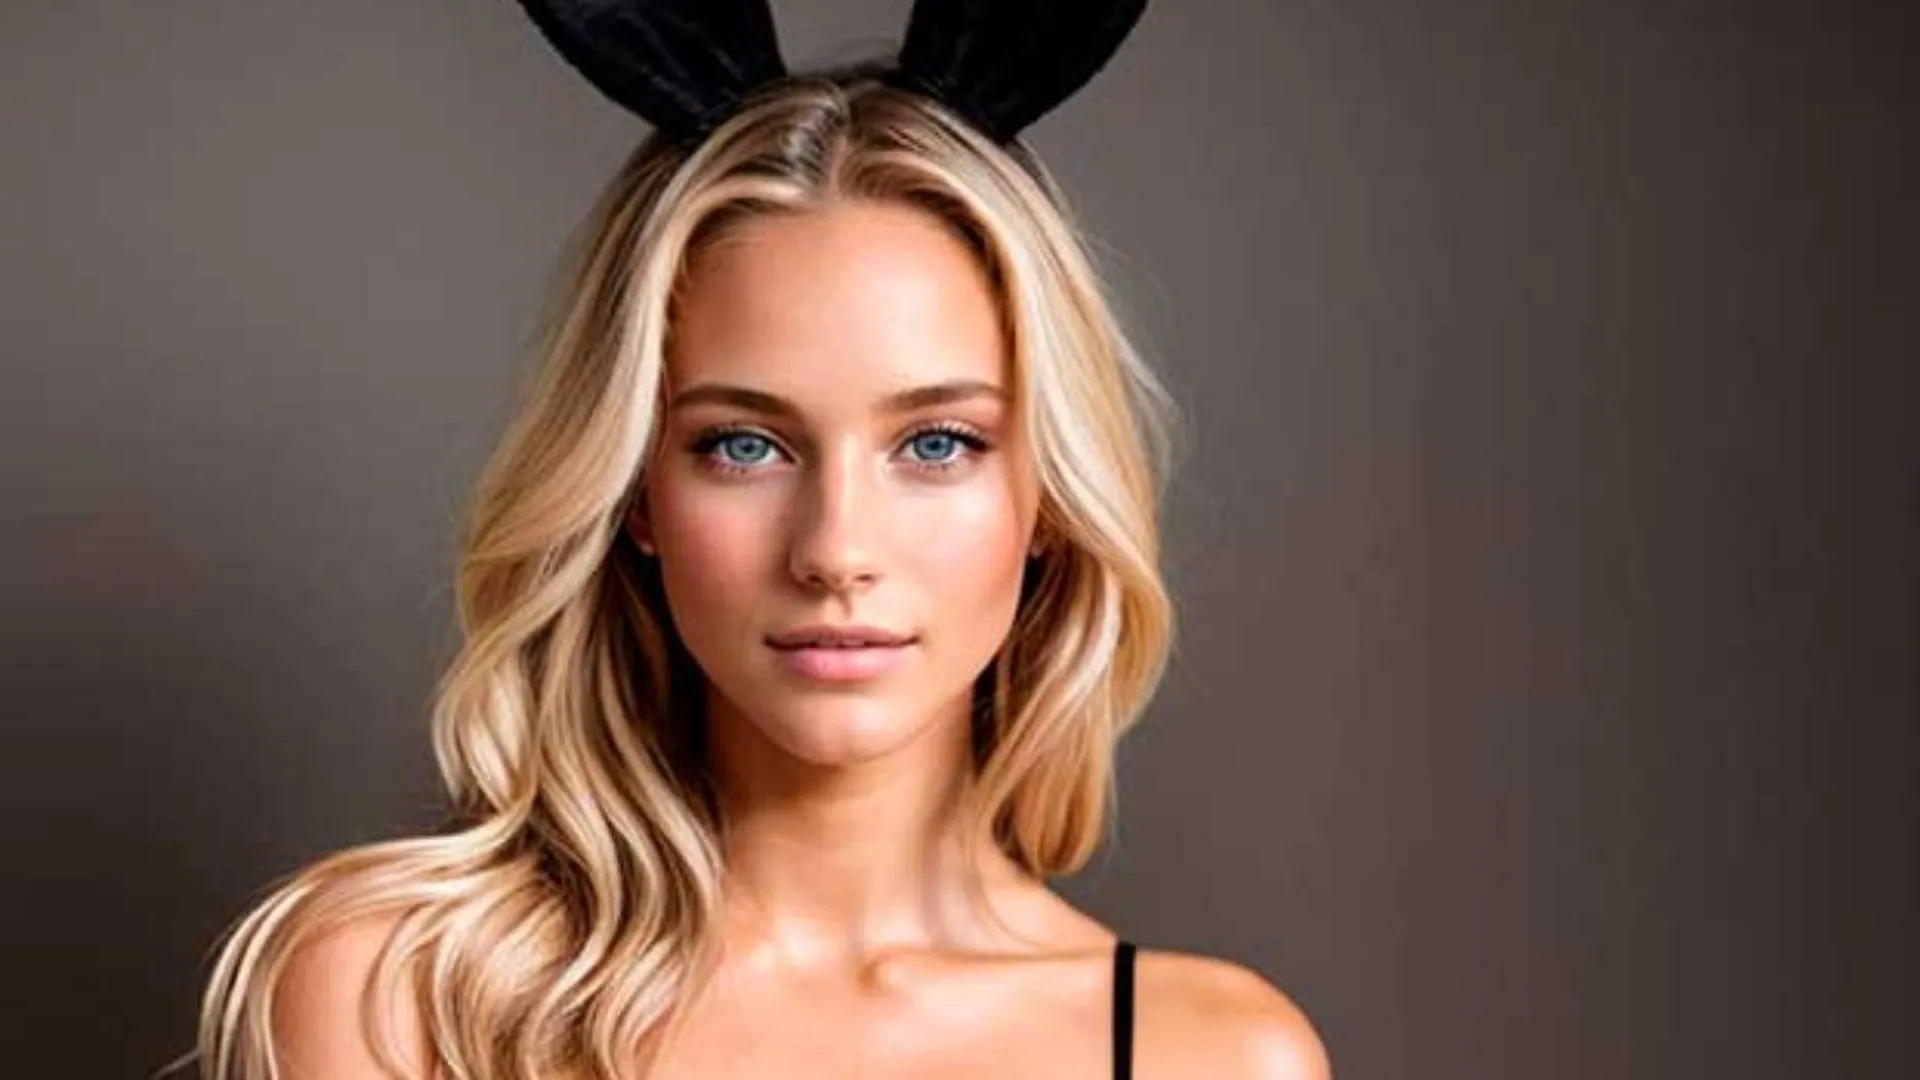 Обложку Playboy впервые украсила созданная нейросетью модель Саманта